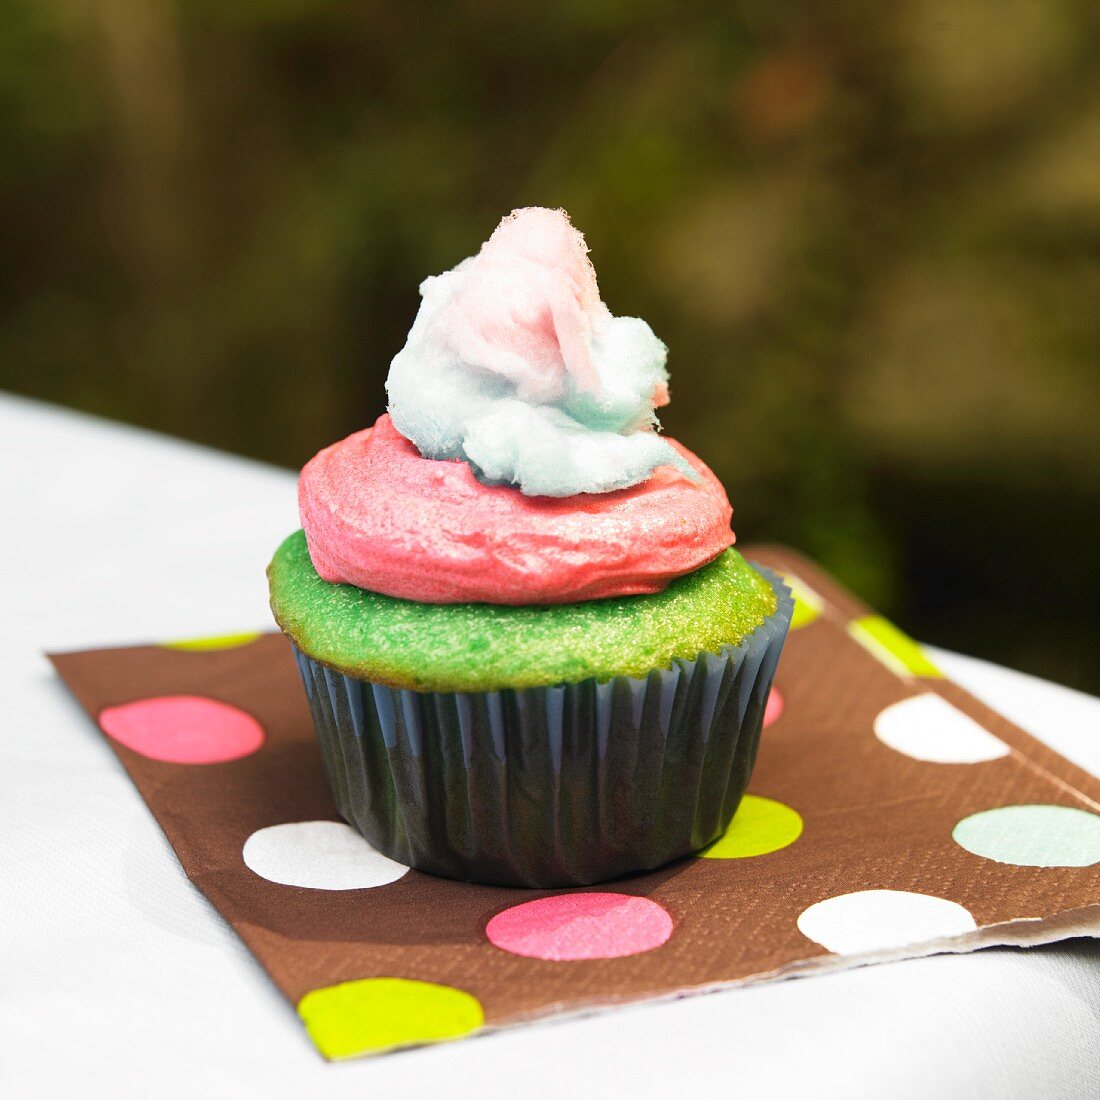 Ein grüner Cupcake mit rosa Frosting & Zuckerwatte auf Serviette